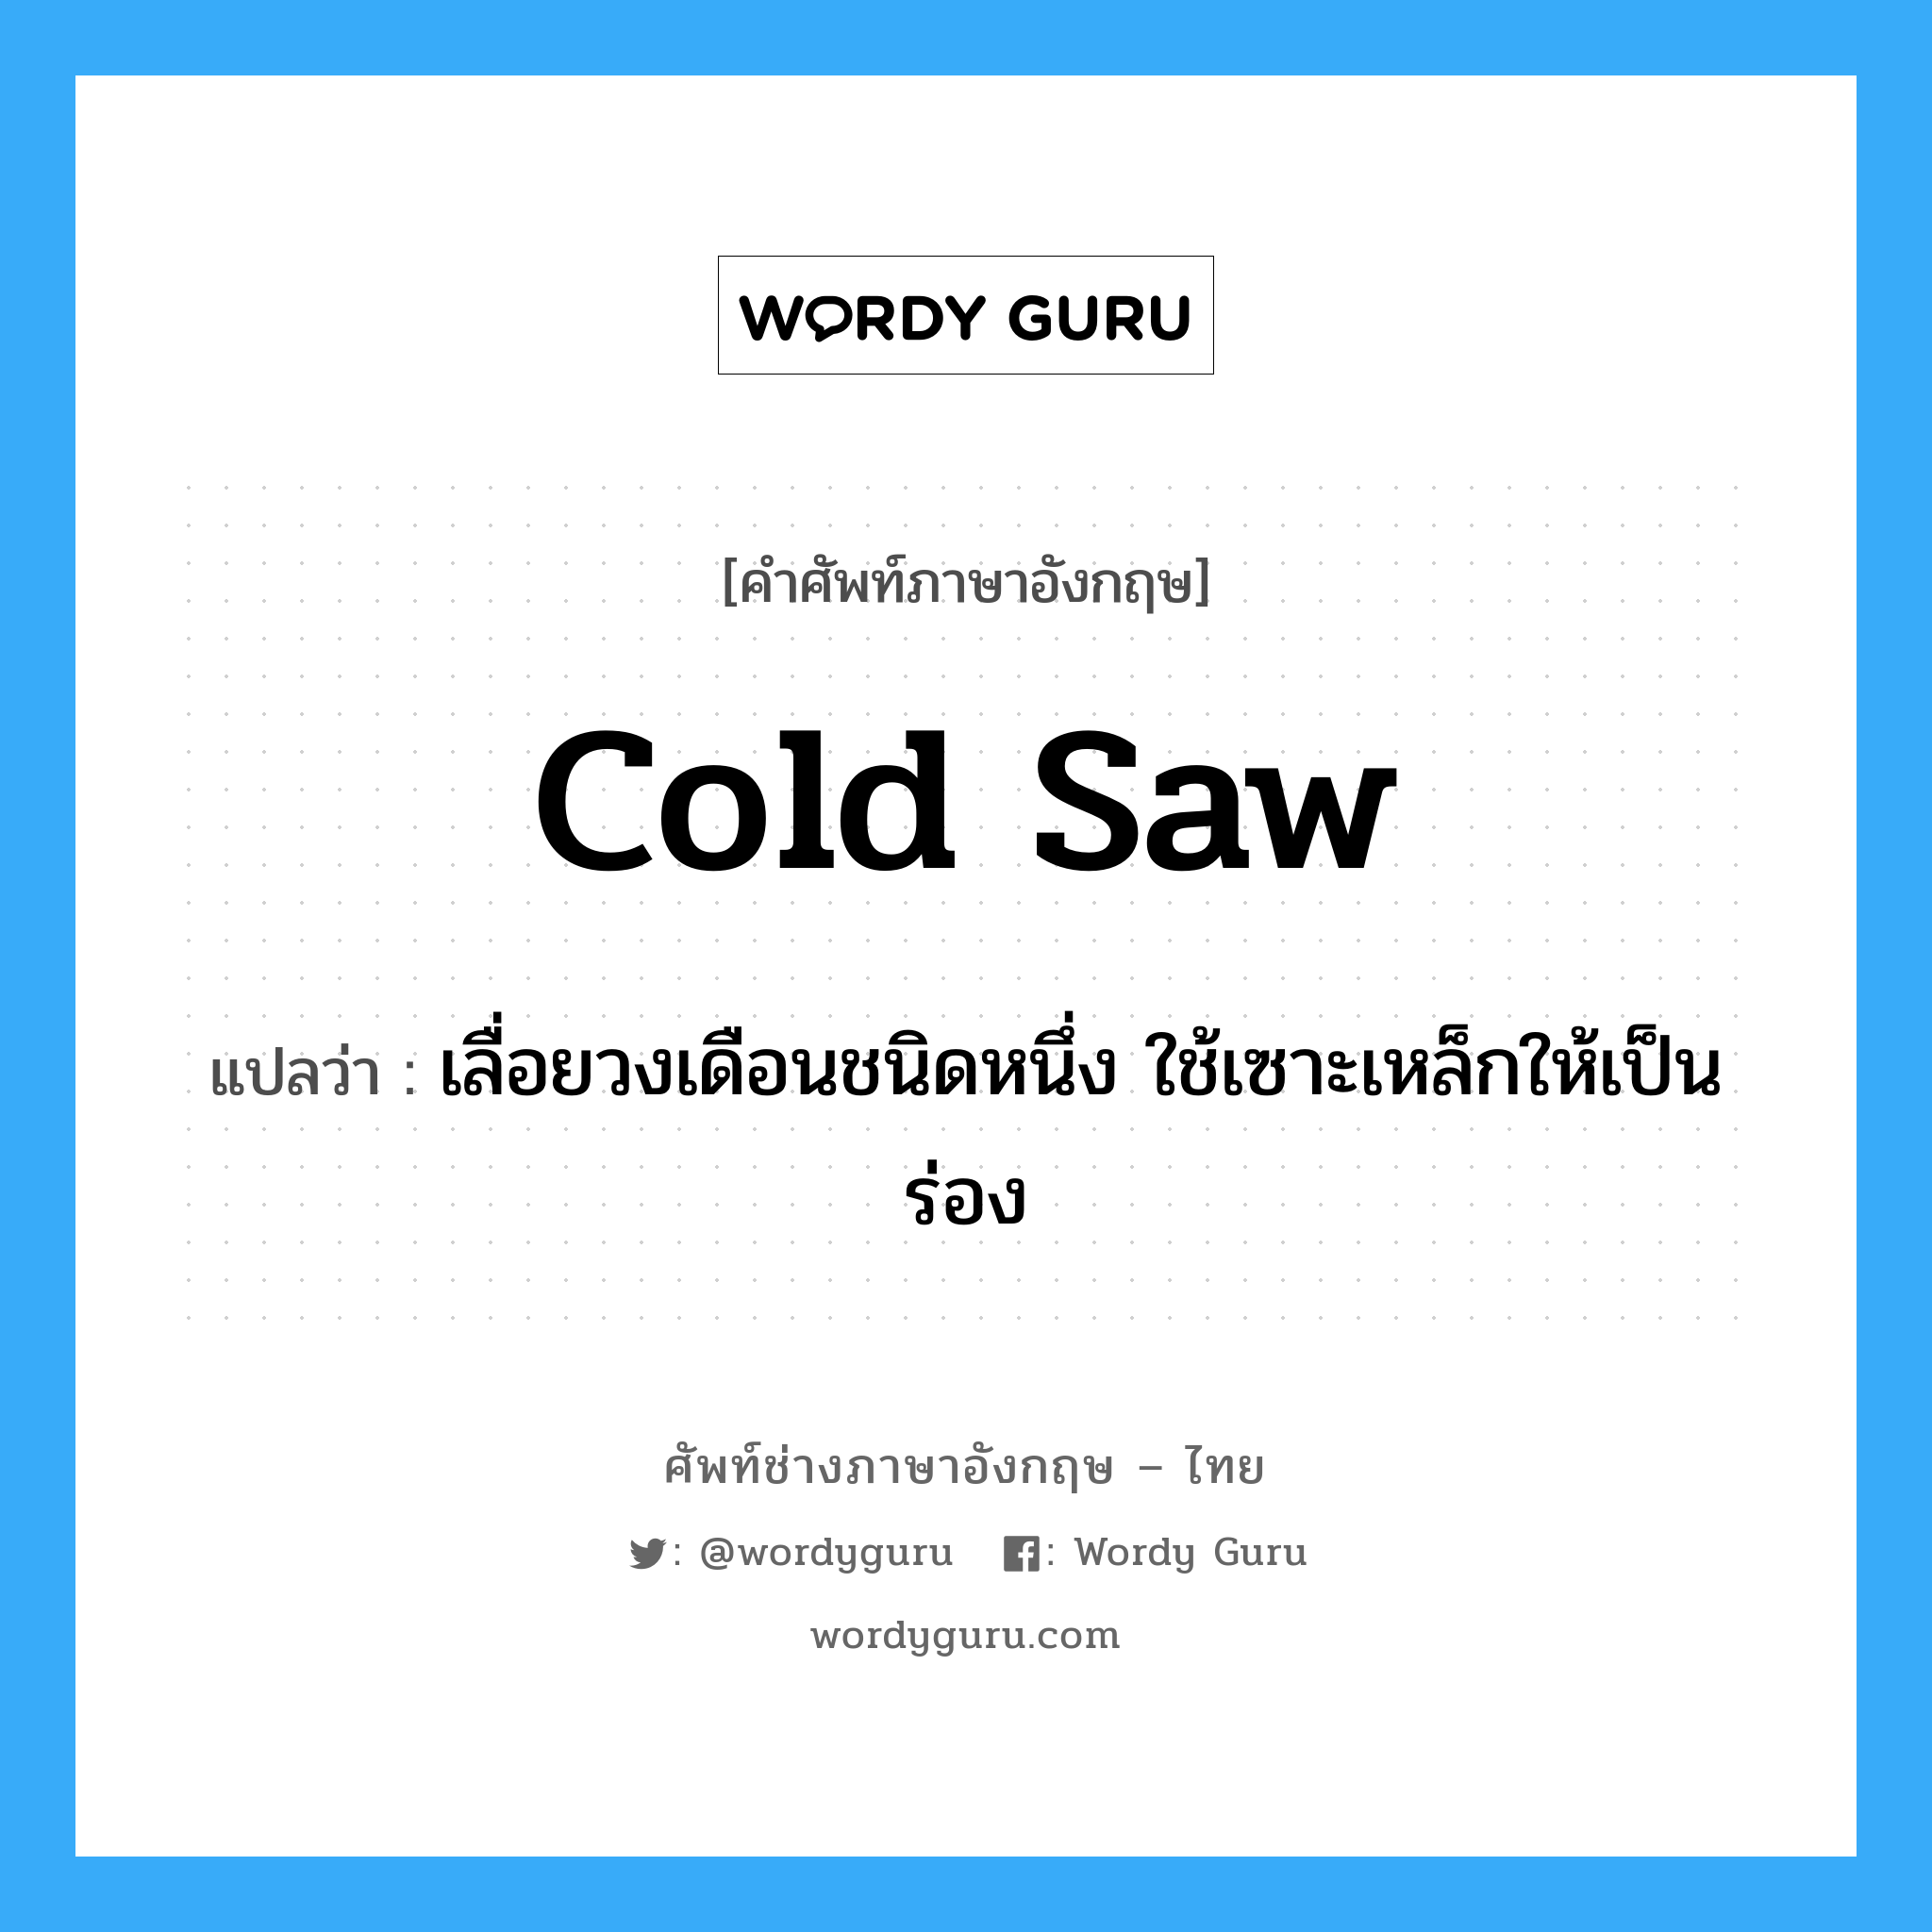 cold saw แปลว่า?, คำศัพท์ช่างภาษาอังกฤษ - ไทย cold saw คำศัพท์ภาษาอังกฤษ cold saw แปลว่า เลื่อยวงเดือนชนิดหนึ่ง ใช้เซาะเหล็กให้เป็นร่อง